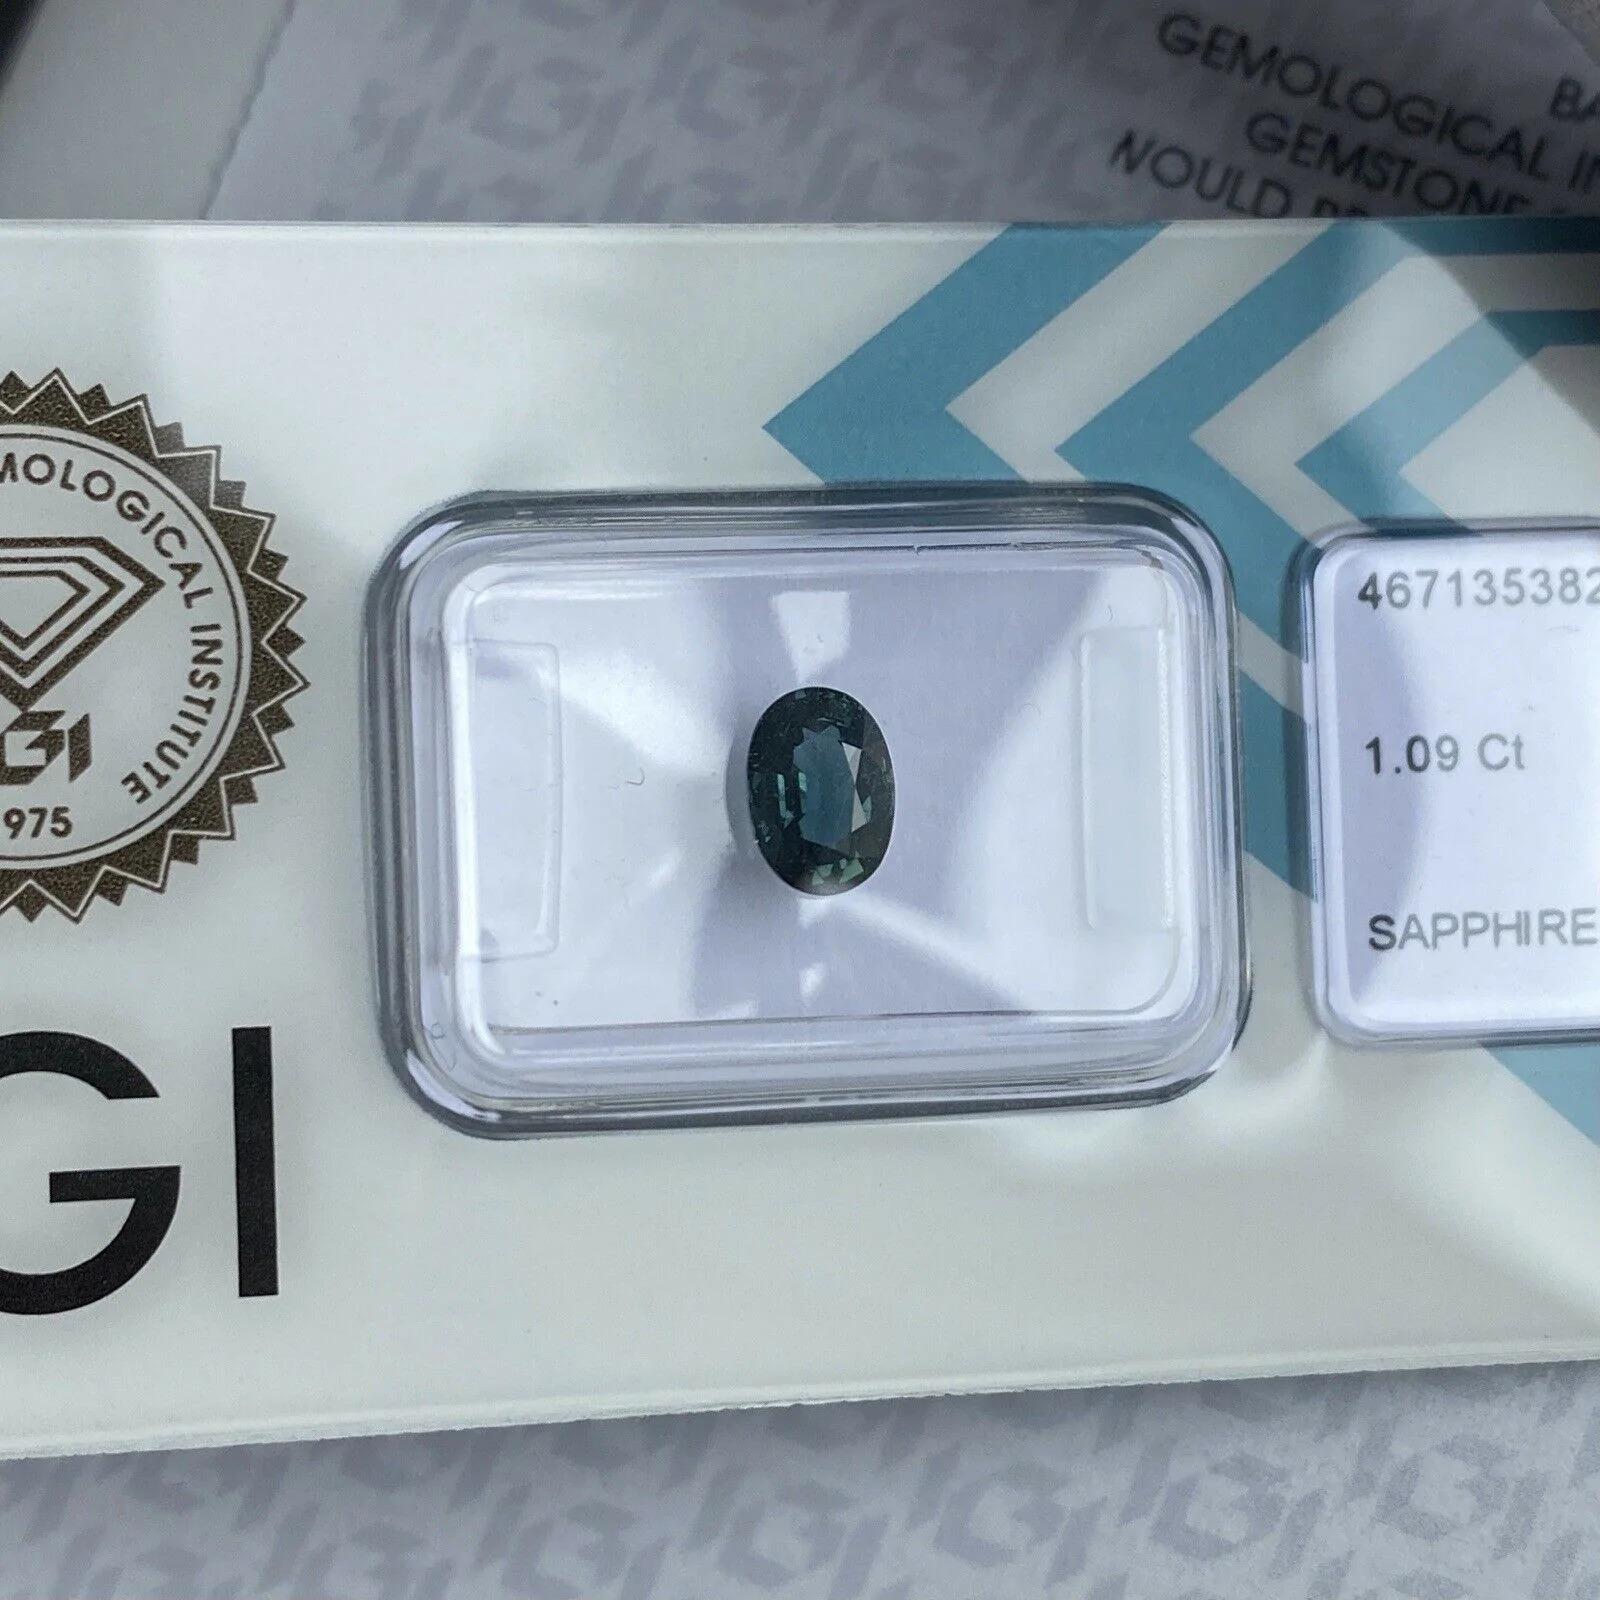 Australischer 1,09ct unbehandelter tiefgrüner blauer Teal Sapphire Ovalschliff IGI zertifiziert

Deep Green Blue 'Teal' Unbehandelter Saphir in IGI Blister. 
1.09 Karat mit einem ausgezeichneten ovalen Schliff und ausgezeichneter Reinheit, sehr